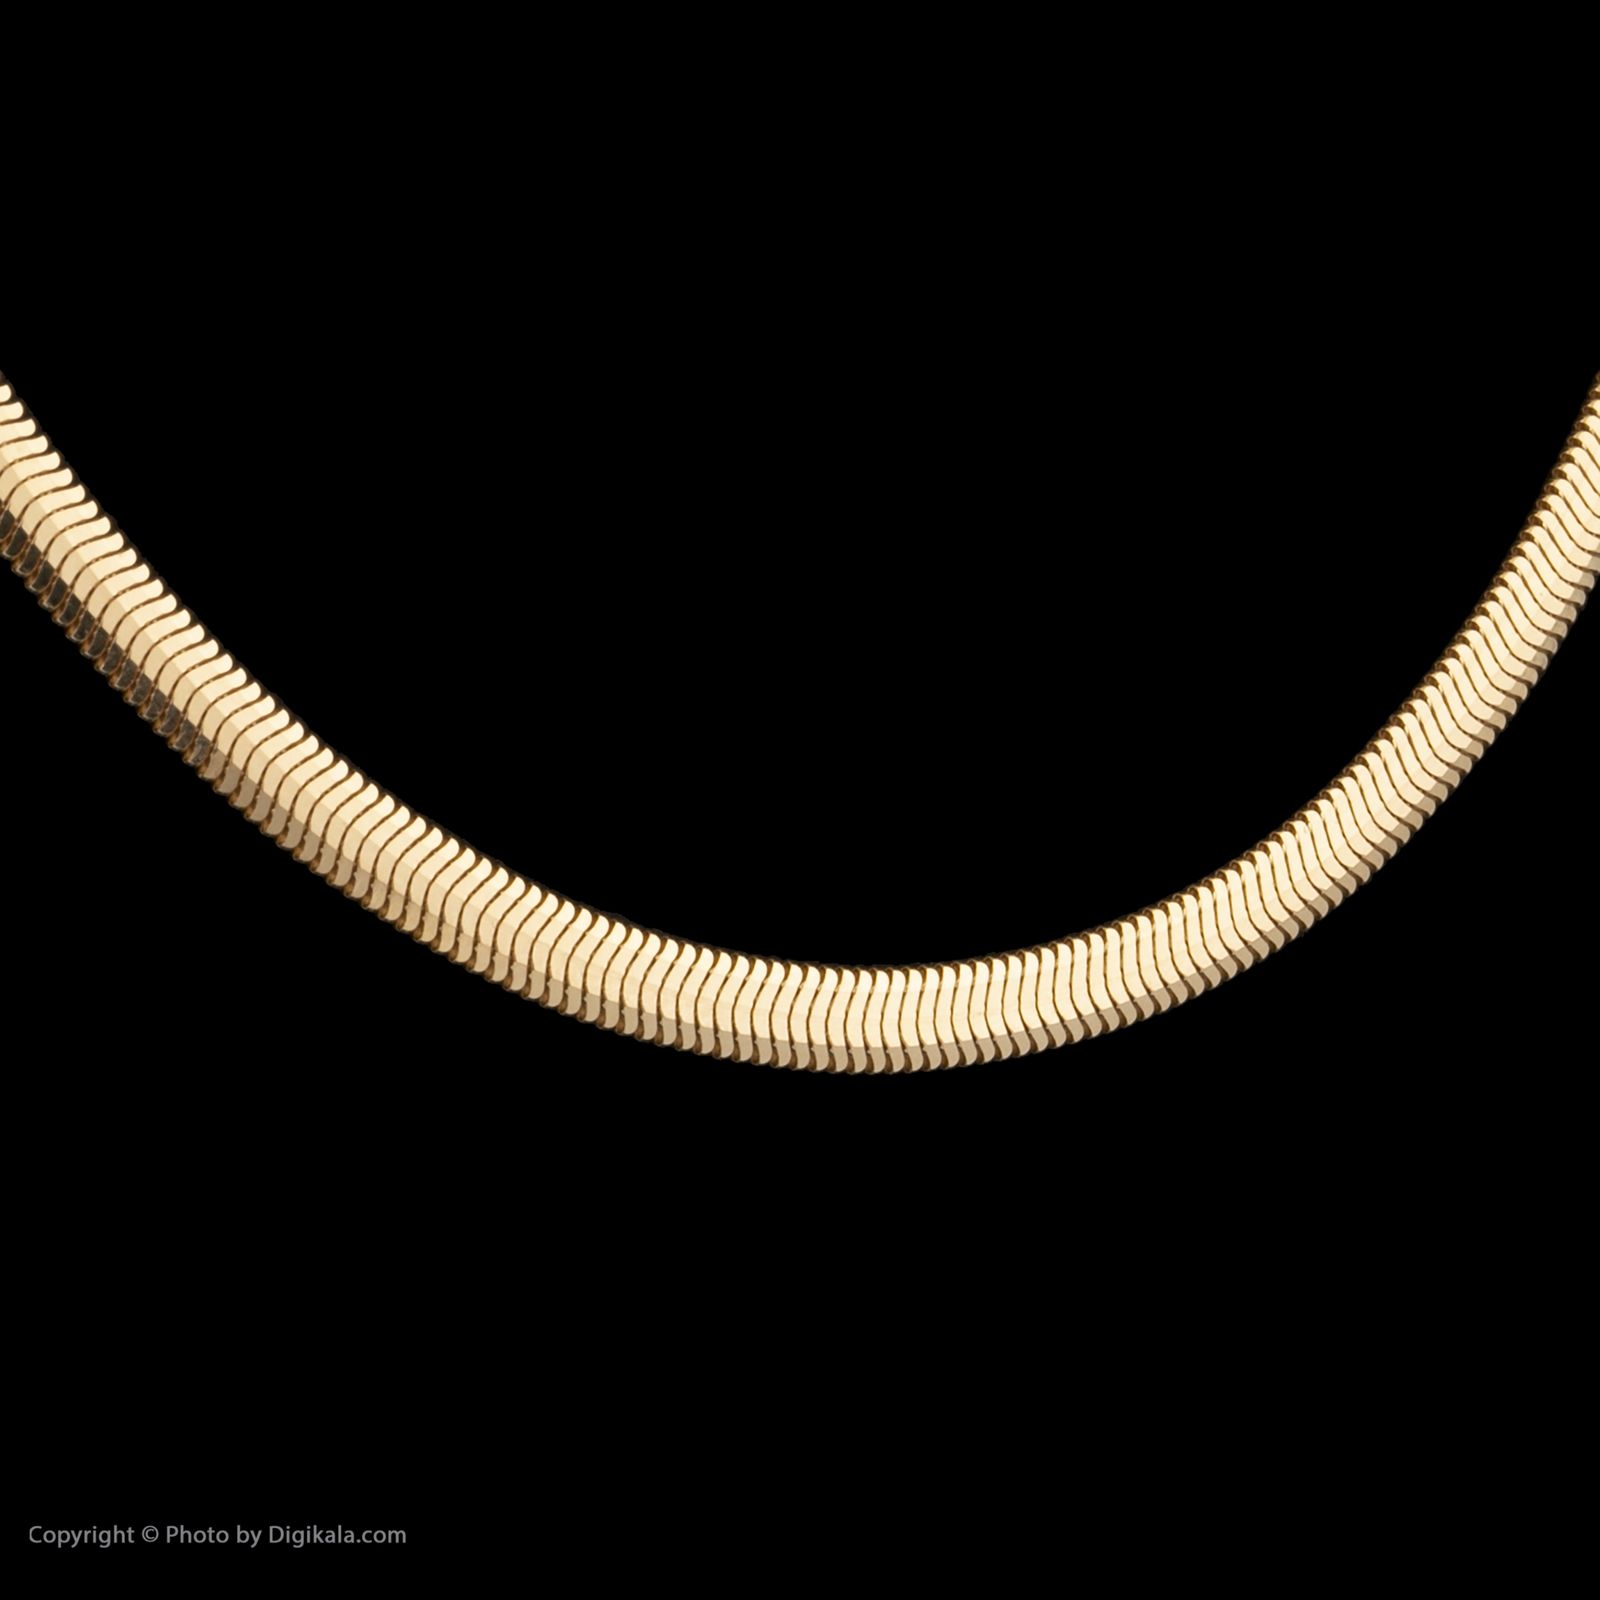 گردنبند طلا 18 عیار زنانه مایا ماهک مدل MM1736 طرح تیغ ماهی - هرینگبون -  - 3